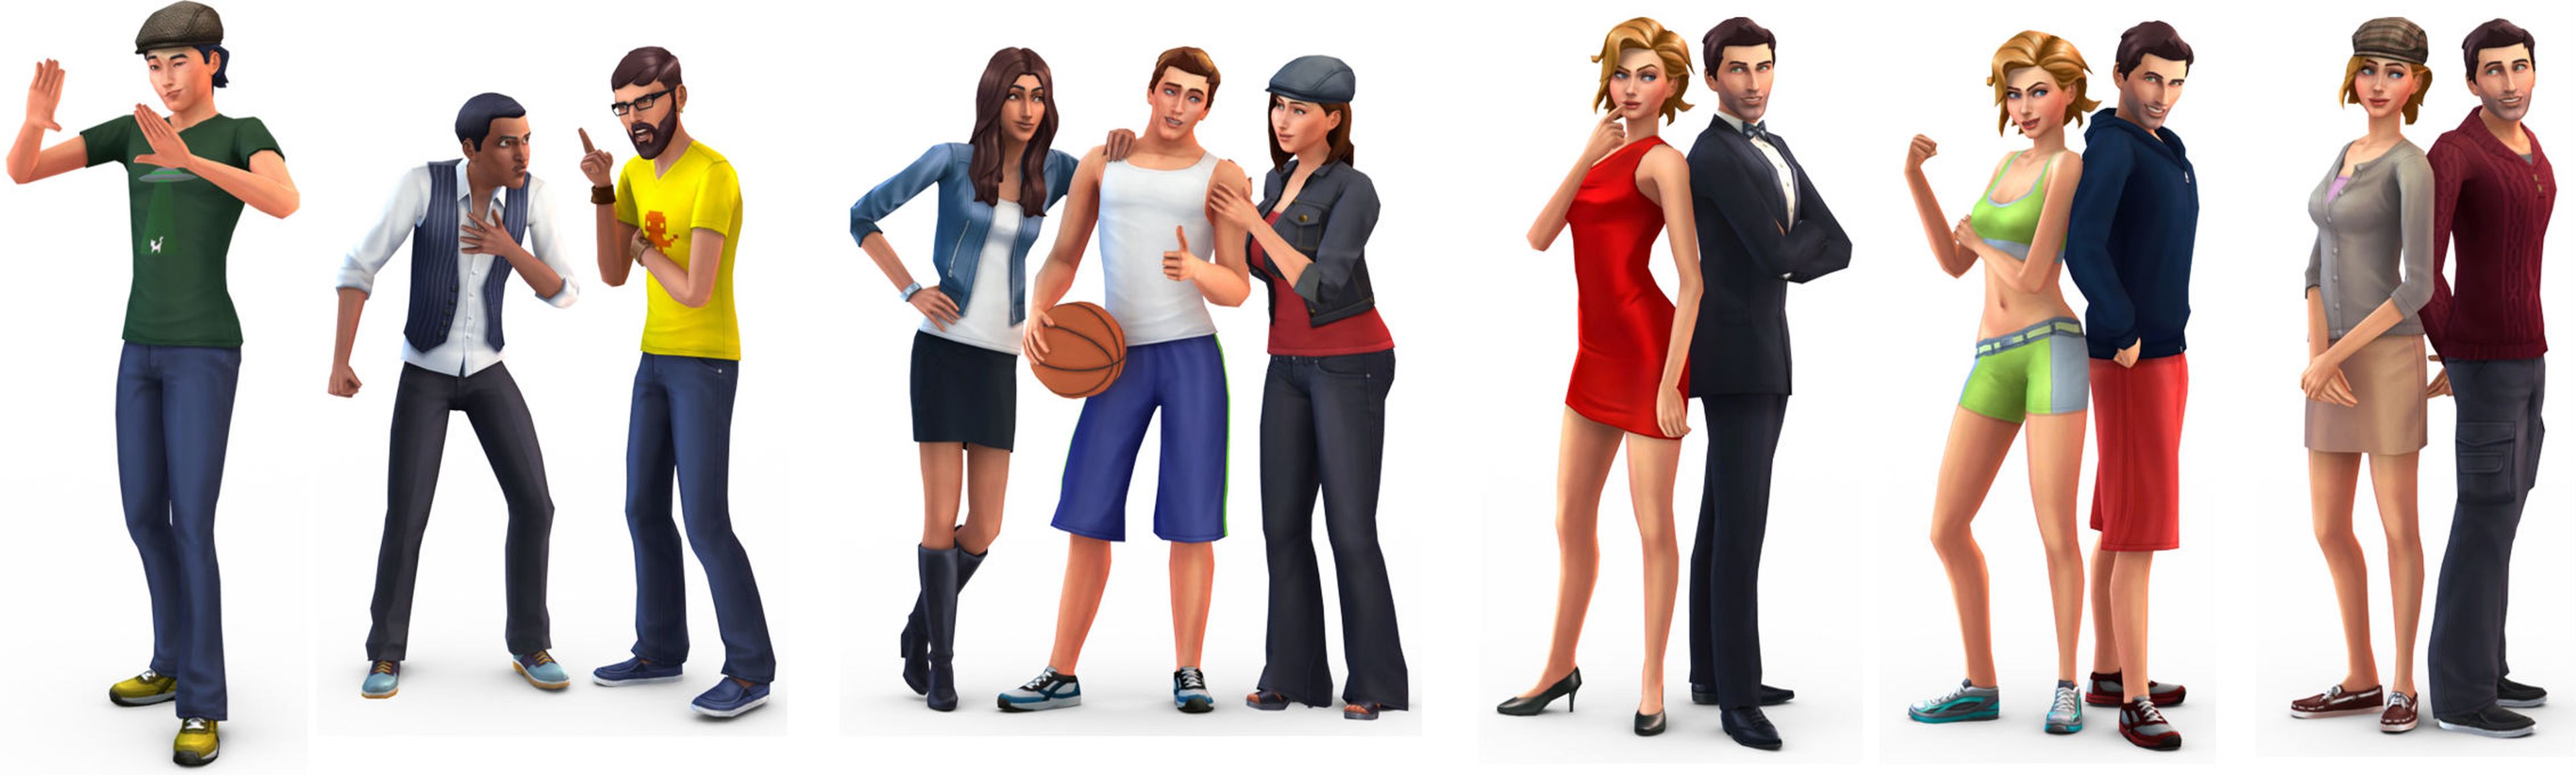 Gamescom 2013: Primer tráiler de Los Sims 4